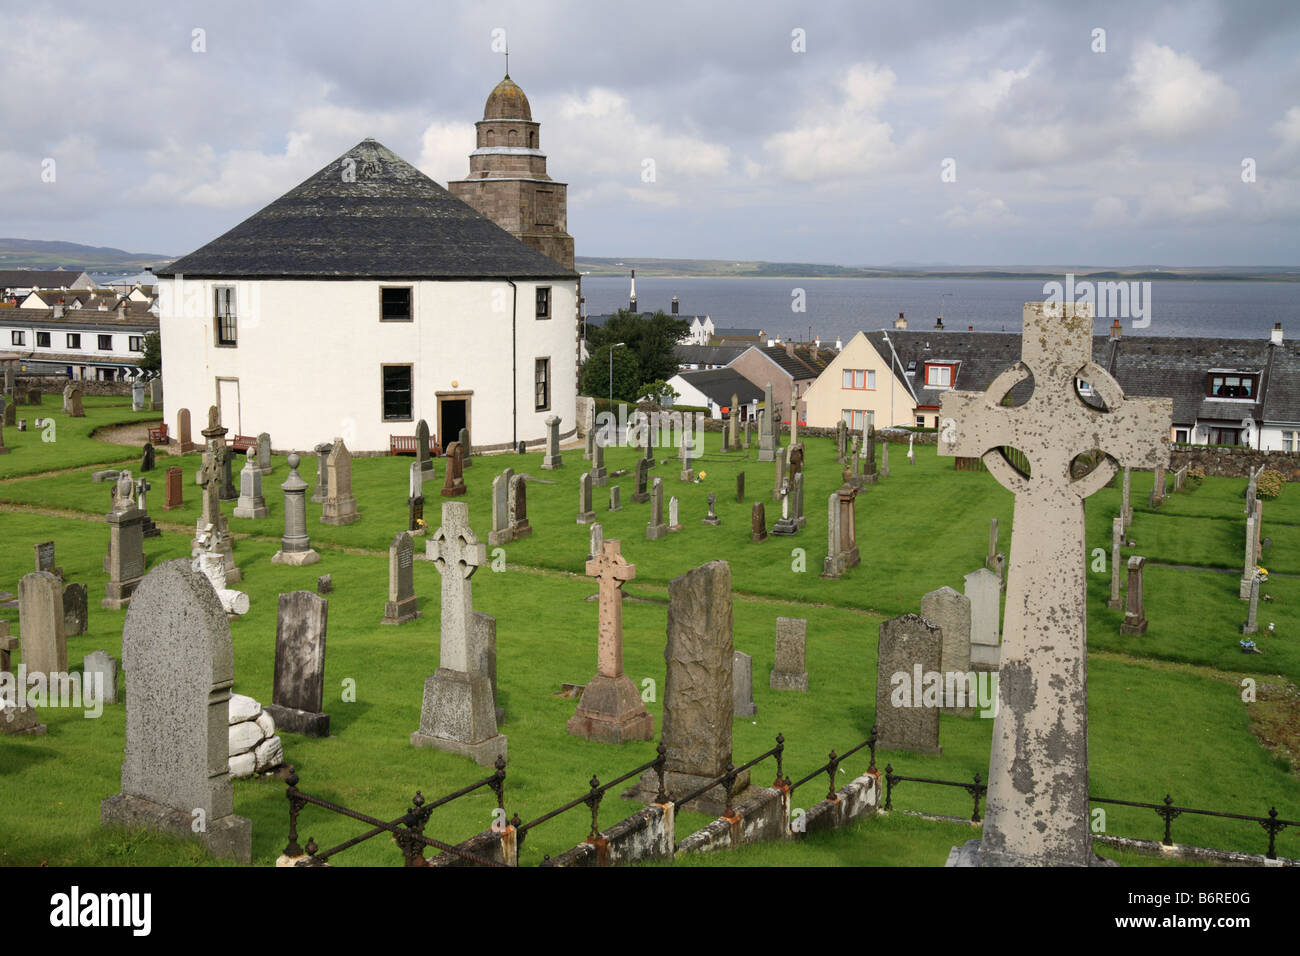 'The Round Church Islay' Bowmore, grave yard and head stones. Parish of Kilarrow, Scotland Stock Photo